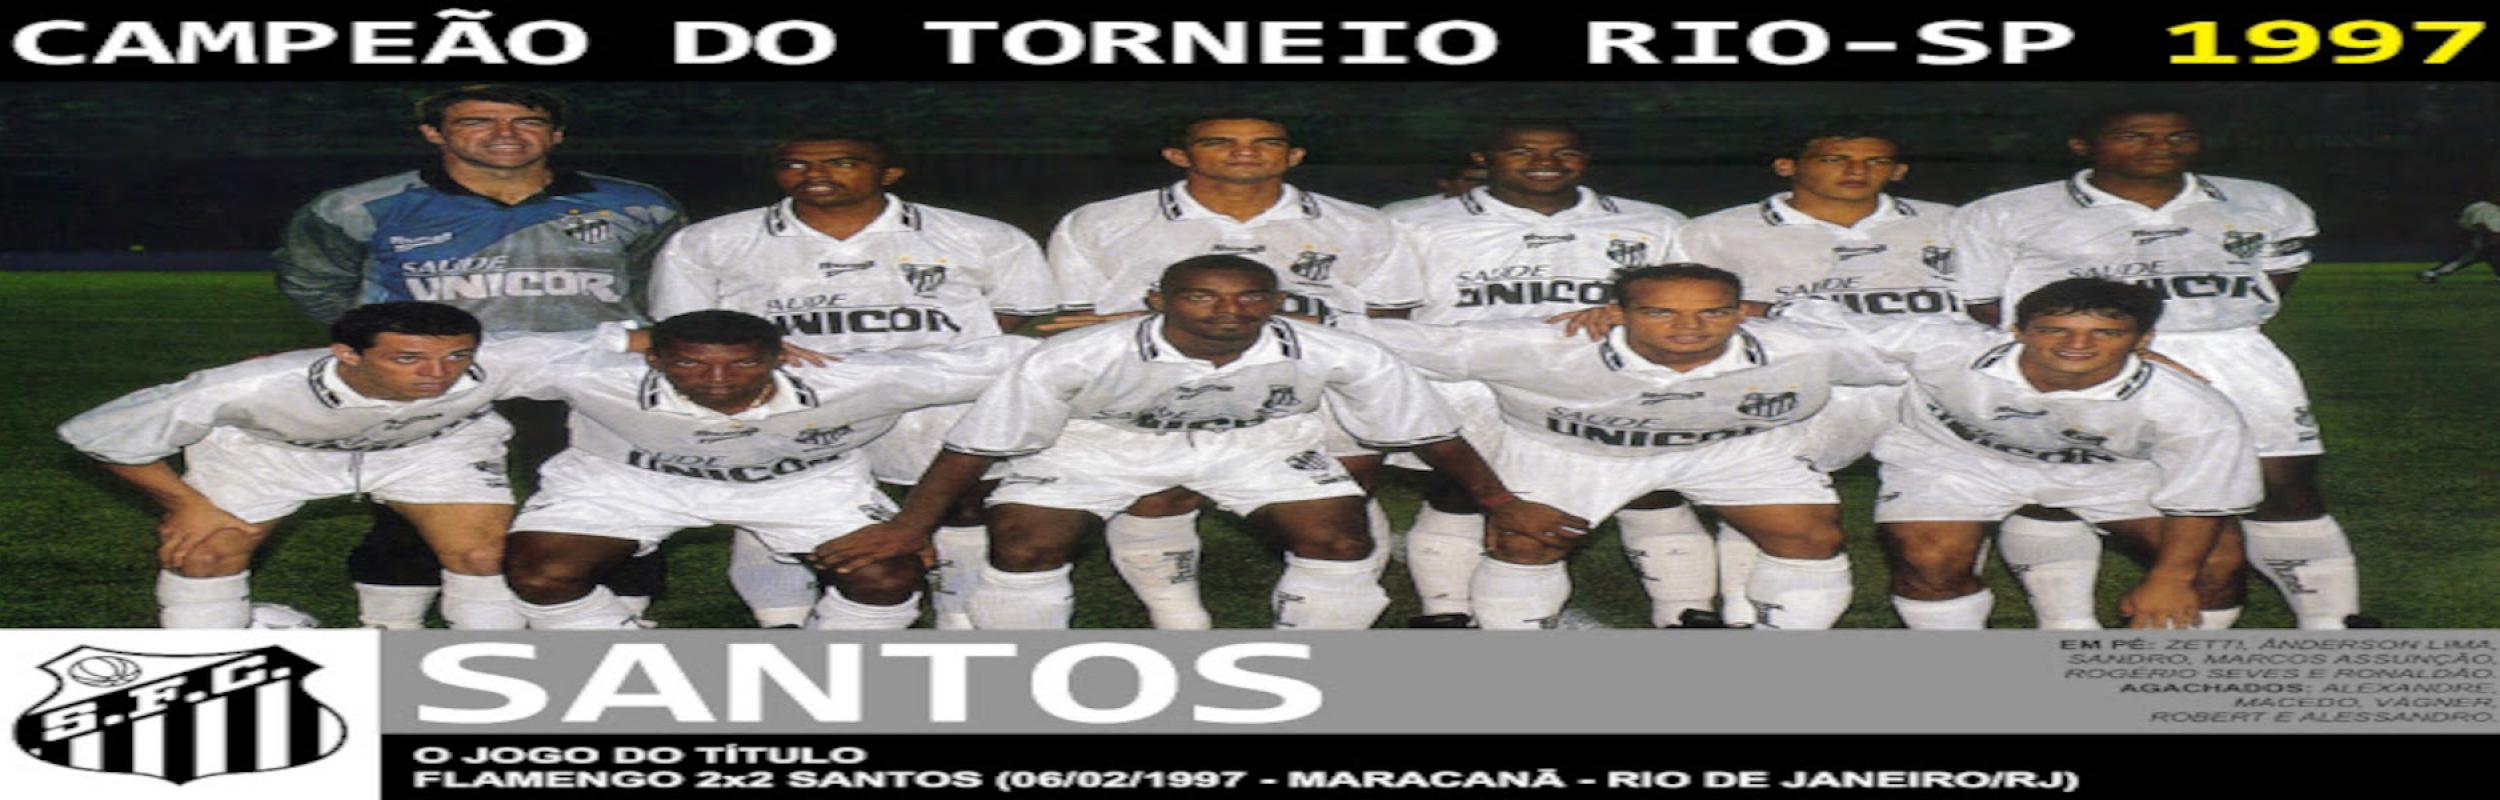 Torneio Rio-São Paulo 1997